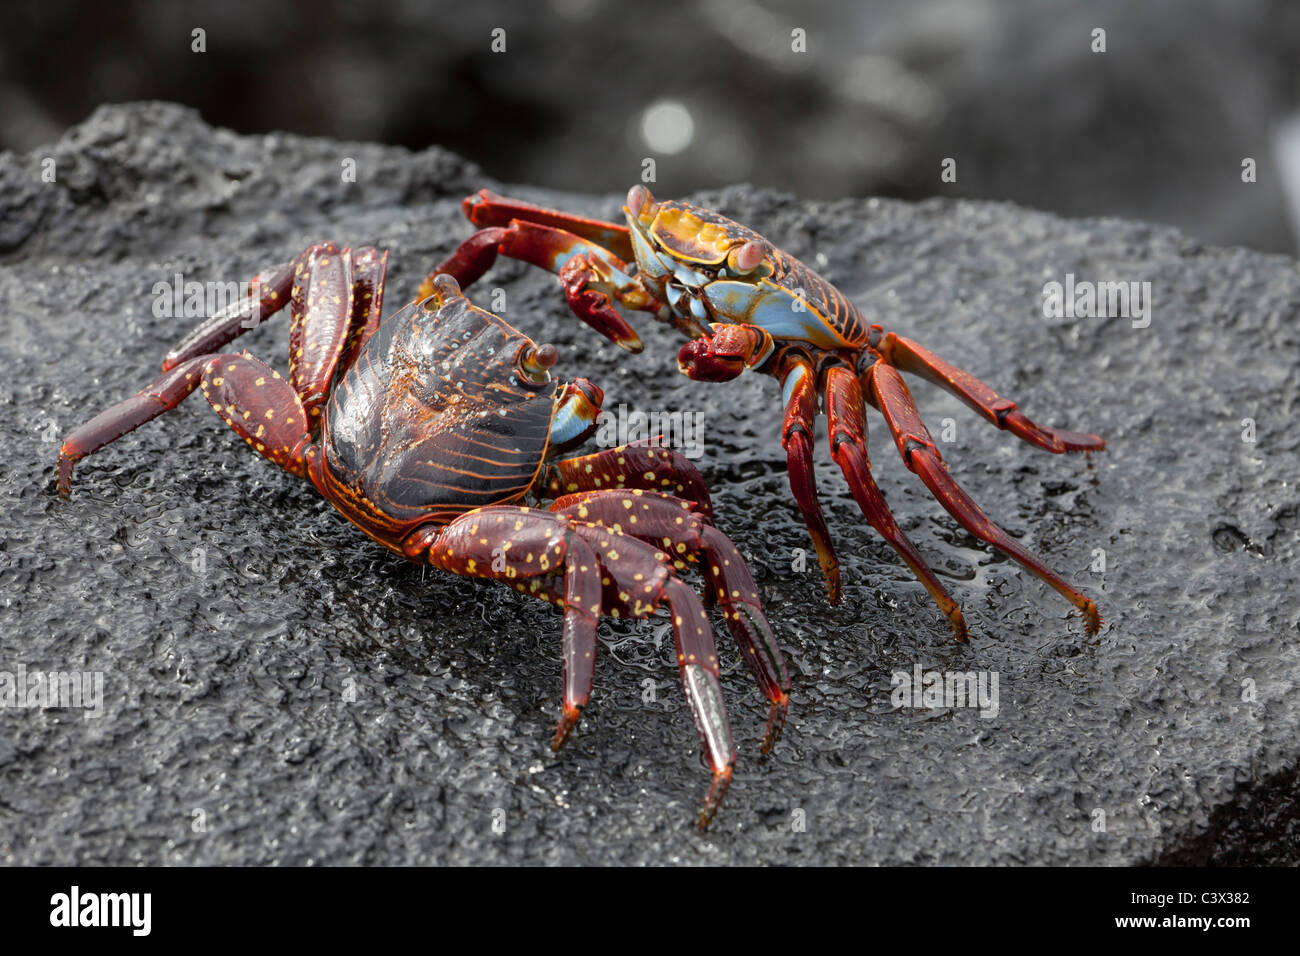 afterglow of two Sally Lightfoot Grapsus grapsus crabs mating, Punta Espinoza, Fernandina island, Galapagos islands, Ecuador Stock Photo